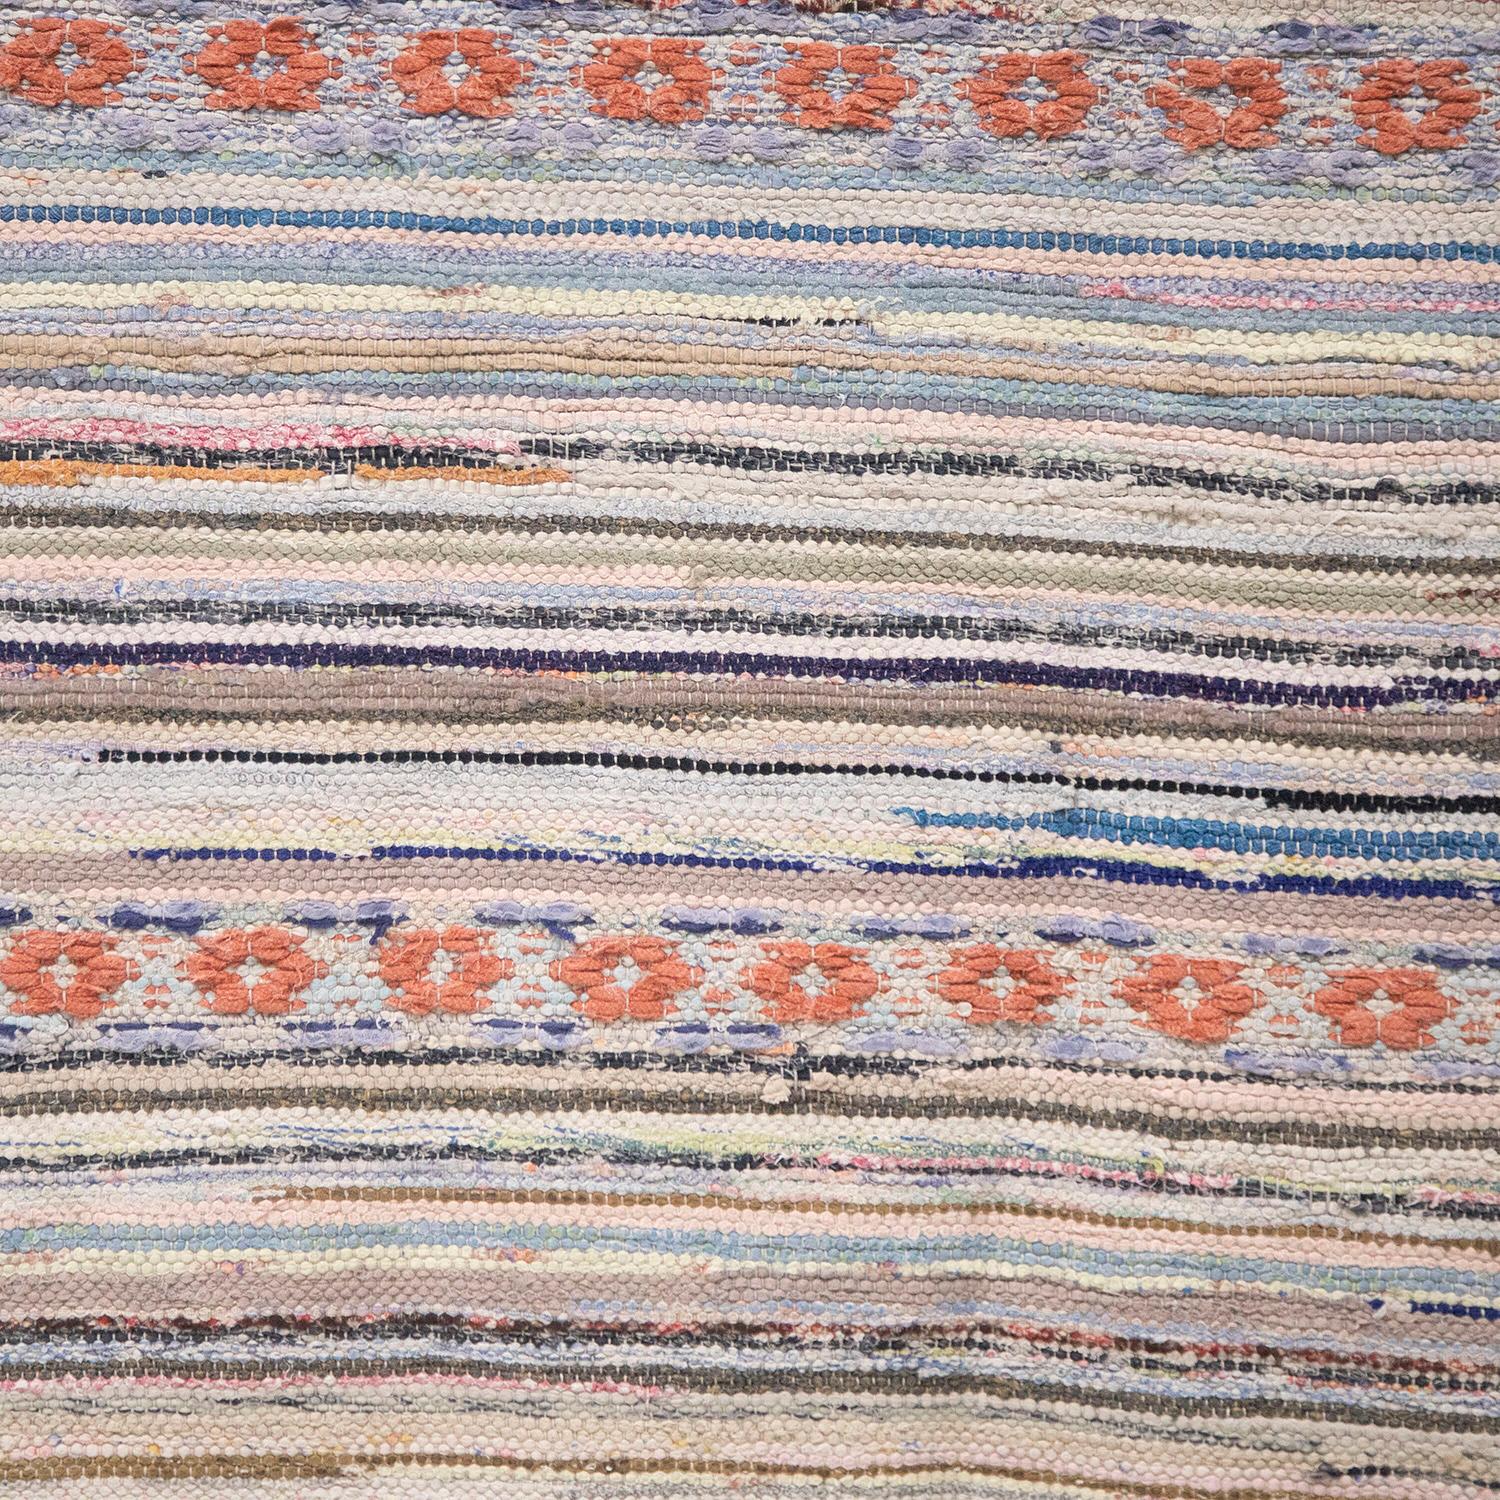 Schwedischer Flickenteppich des 20. Jahrhunderts. 
Mit einem geschwungenen Streifendesign in Blau- und Rottönen. 
Dieser Teppich ist bei 30 Grad in der Maschine waschbar. 
Lager-Nummer: RT6024471